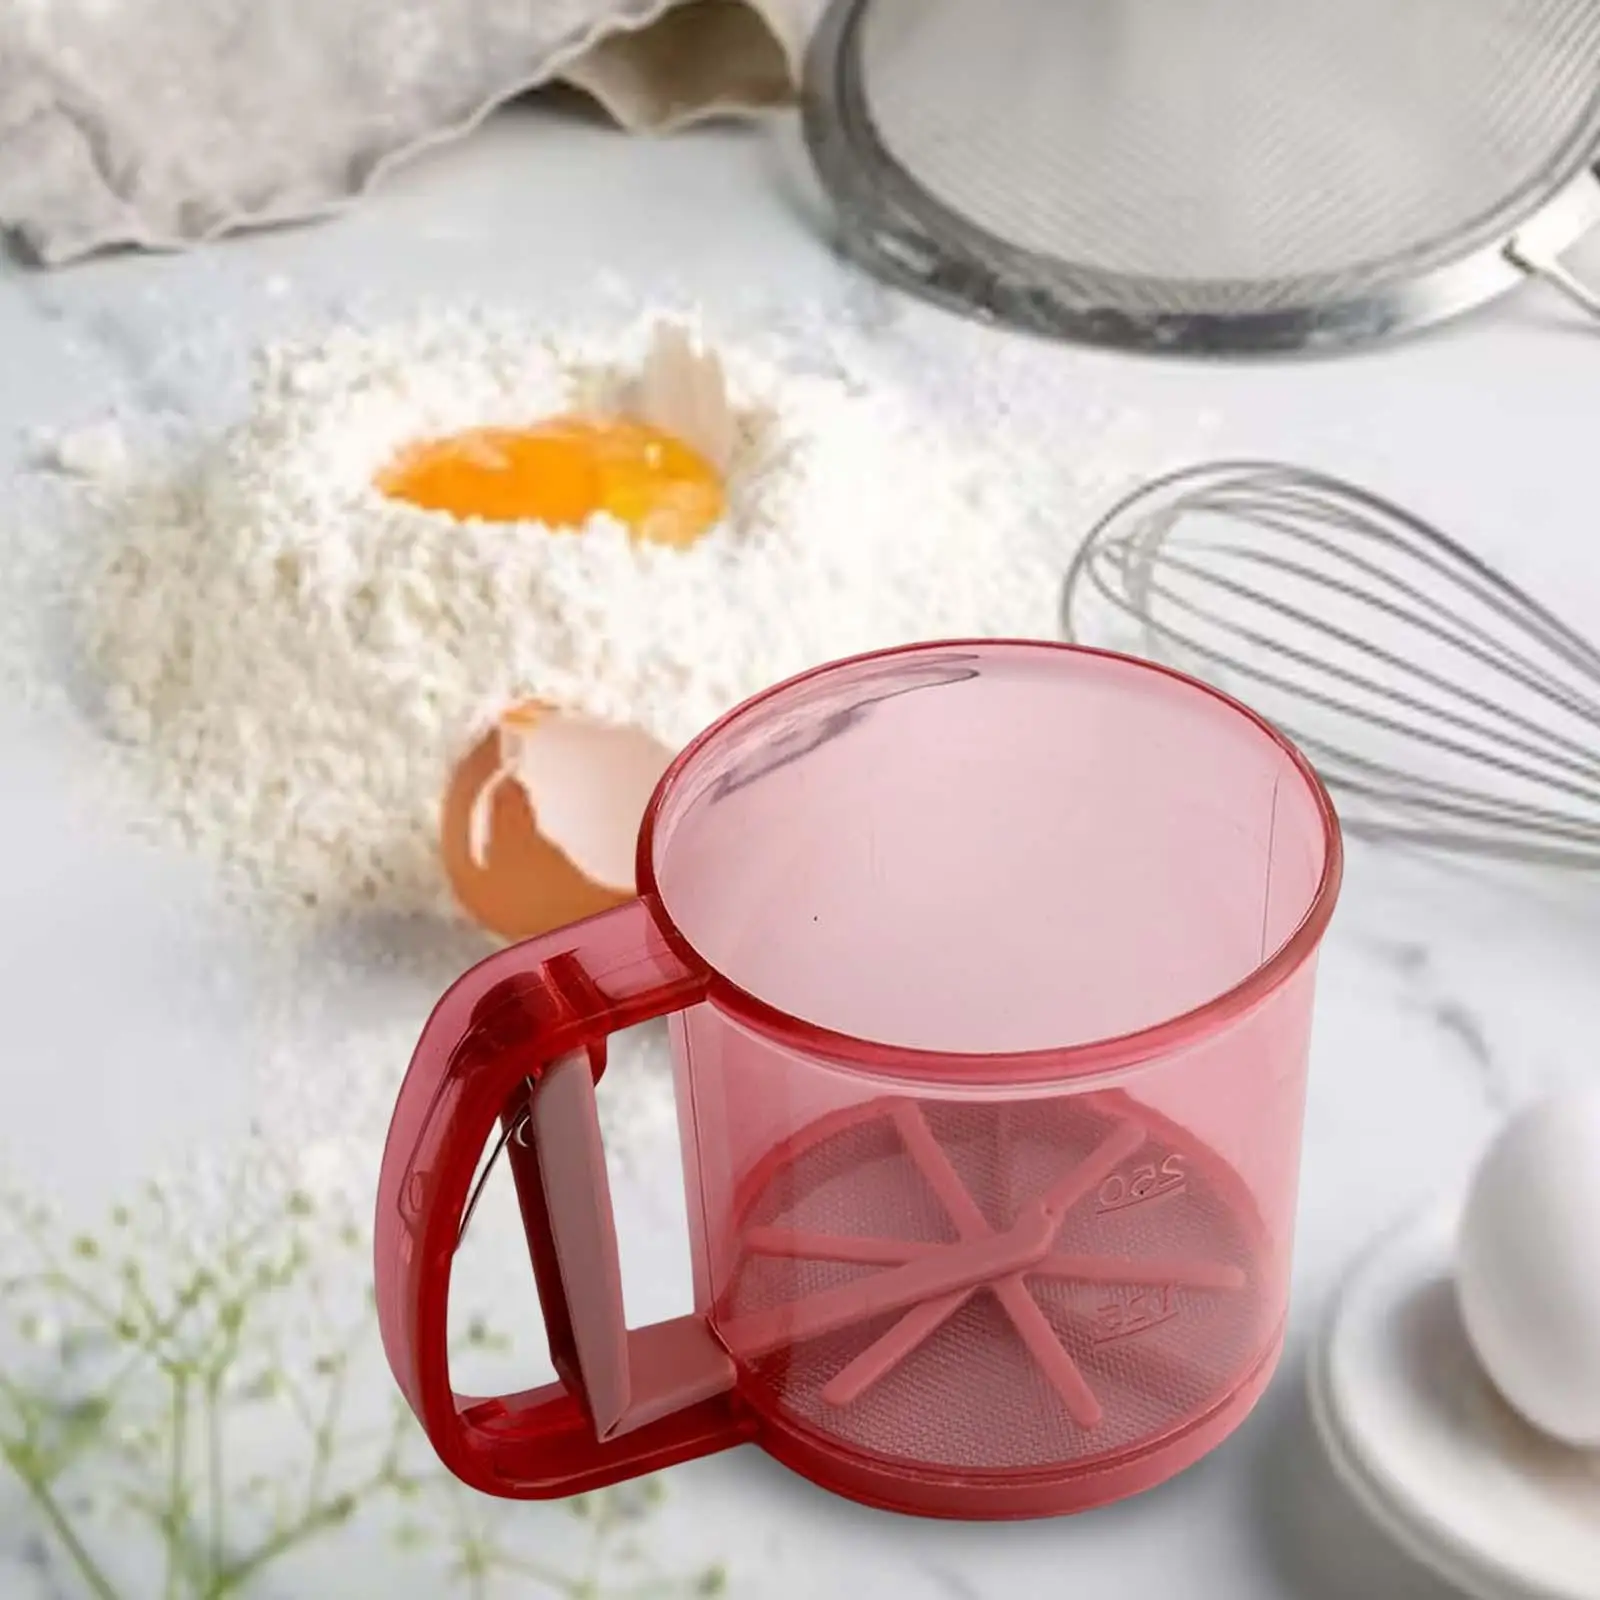 Flour Sieve Kitchen Accessories Flour Colander Multipurpose for Coffee